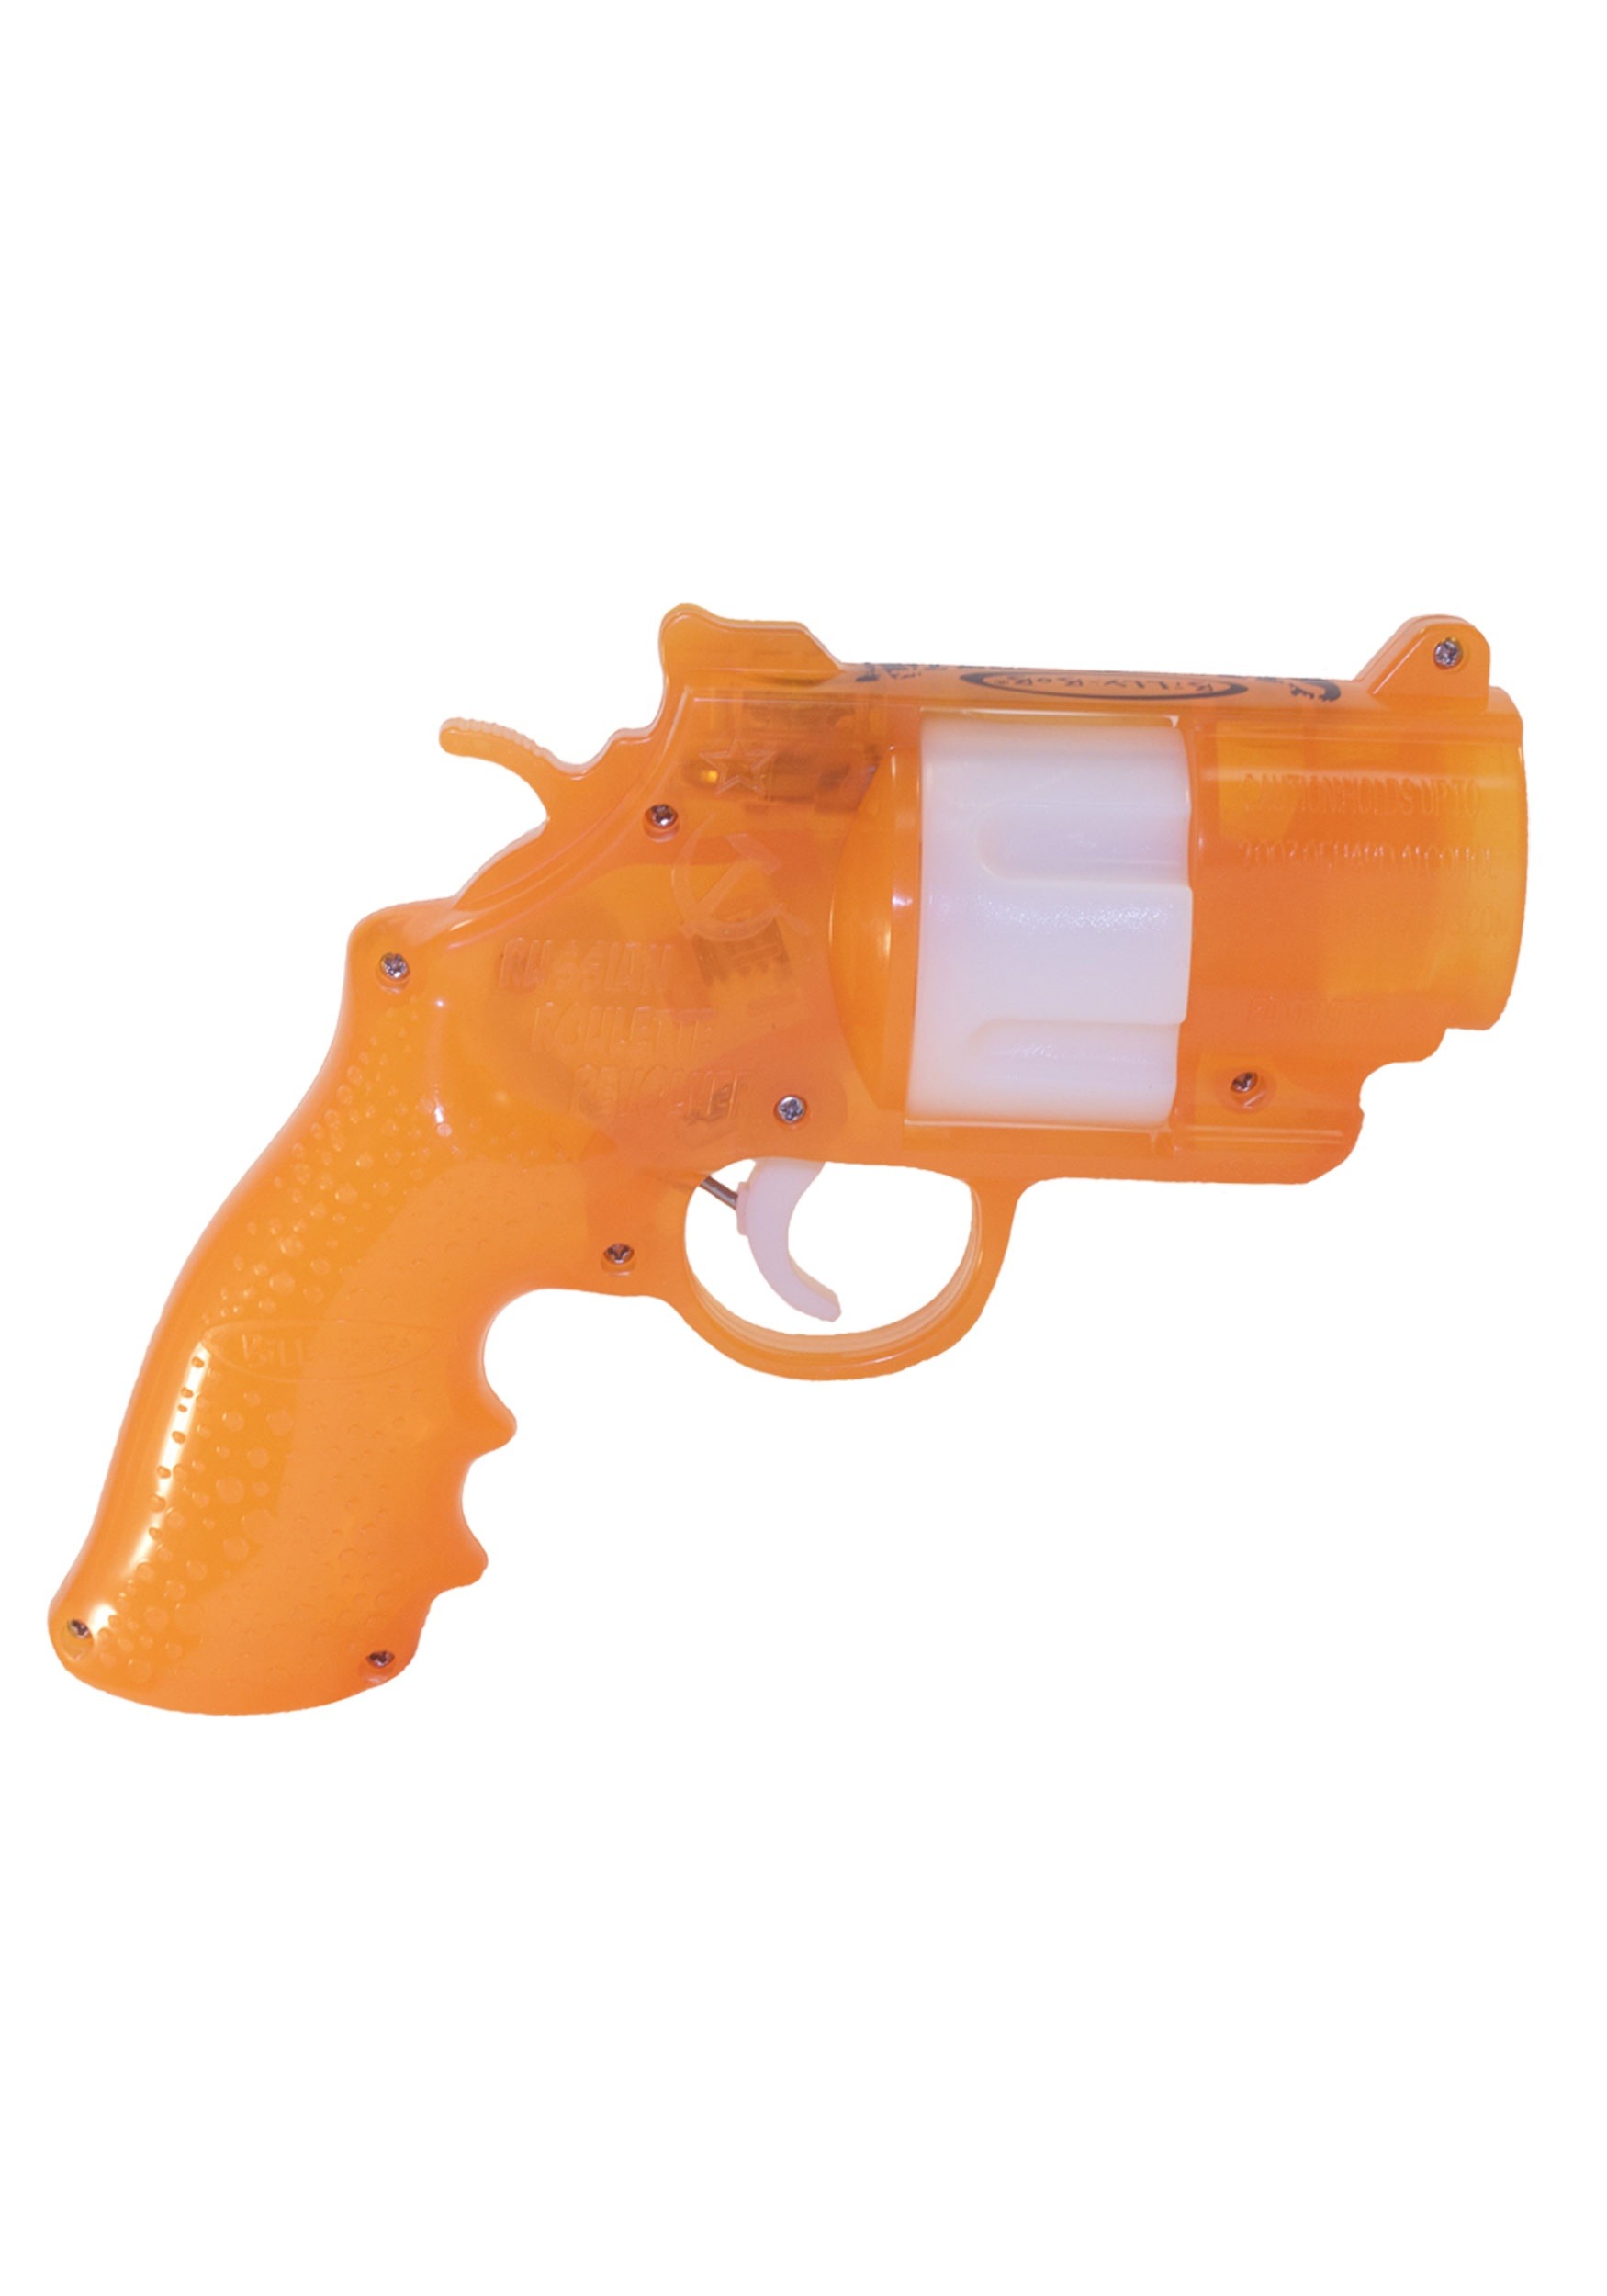 The Shot Gun Device